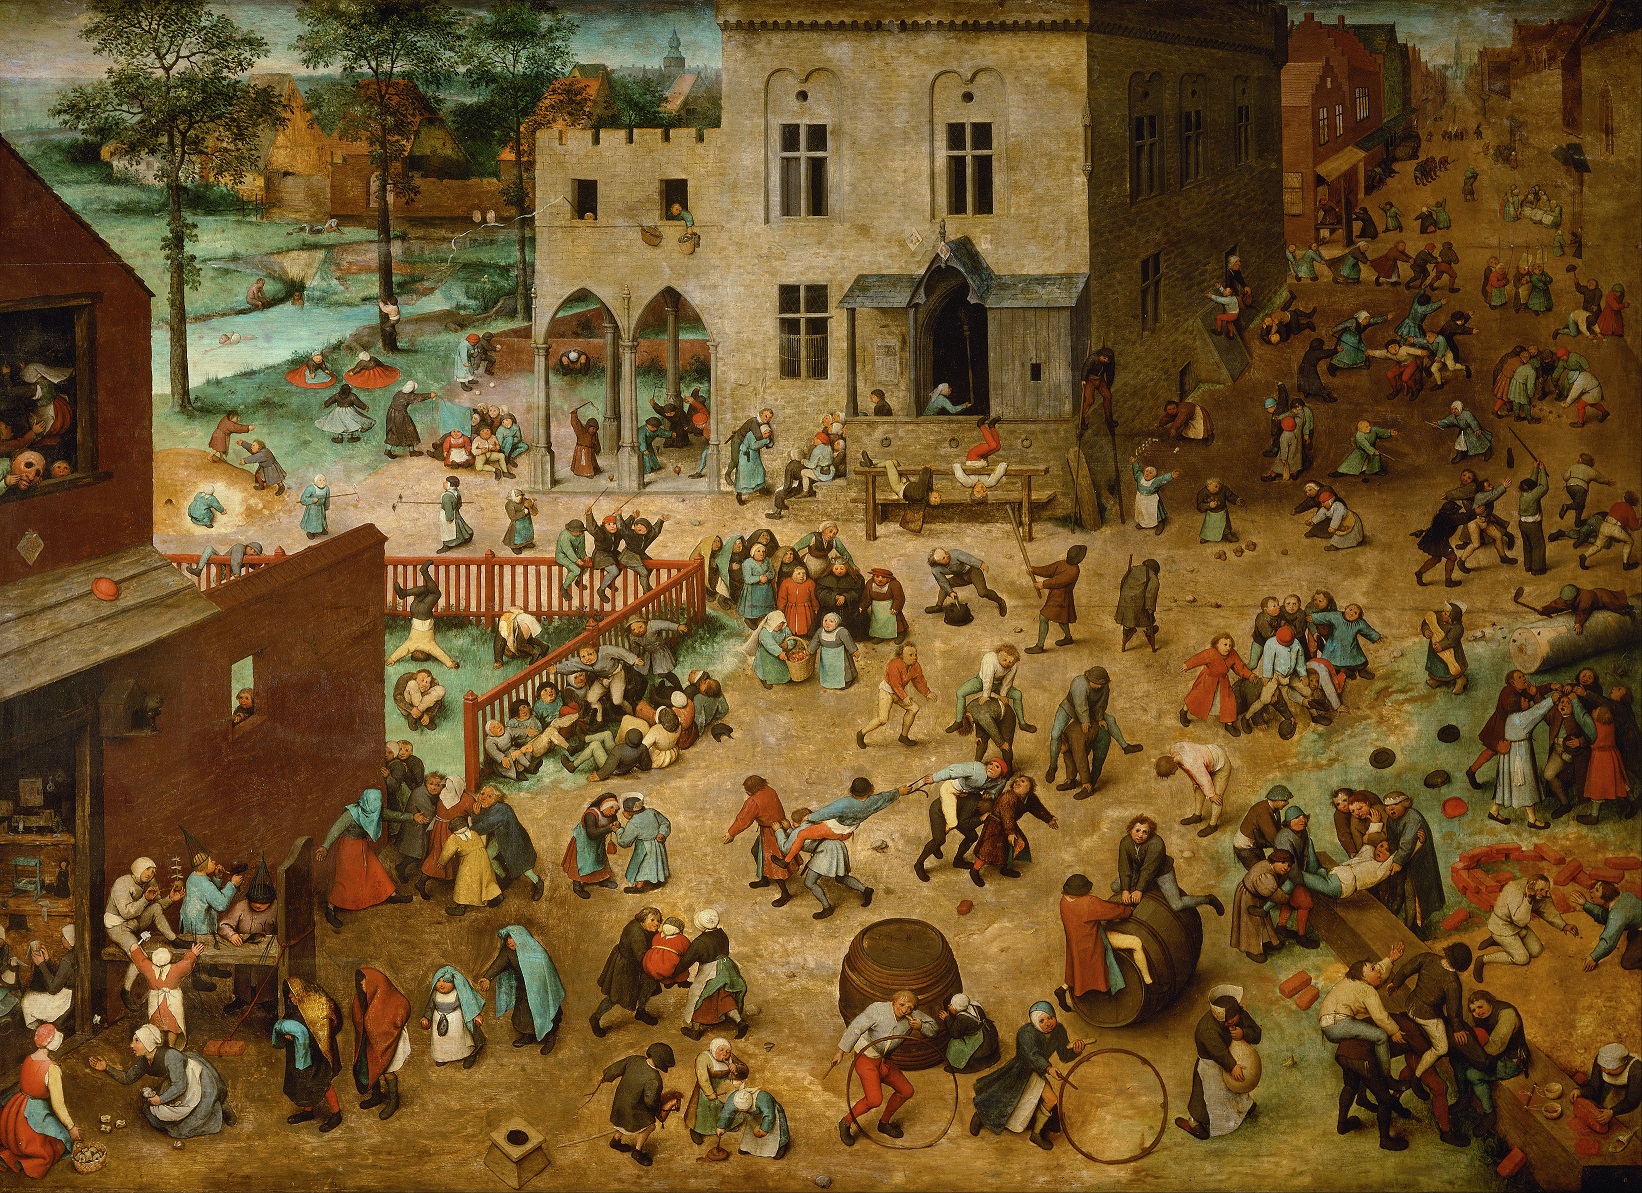 Gyerekek és felnőttek játszanak Pieter Bruegel festményén (forrás: Wikipedia)